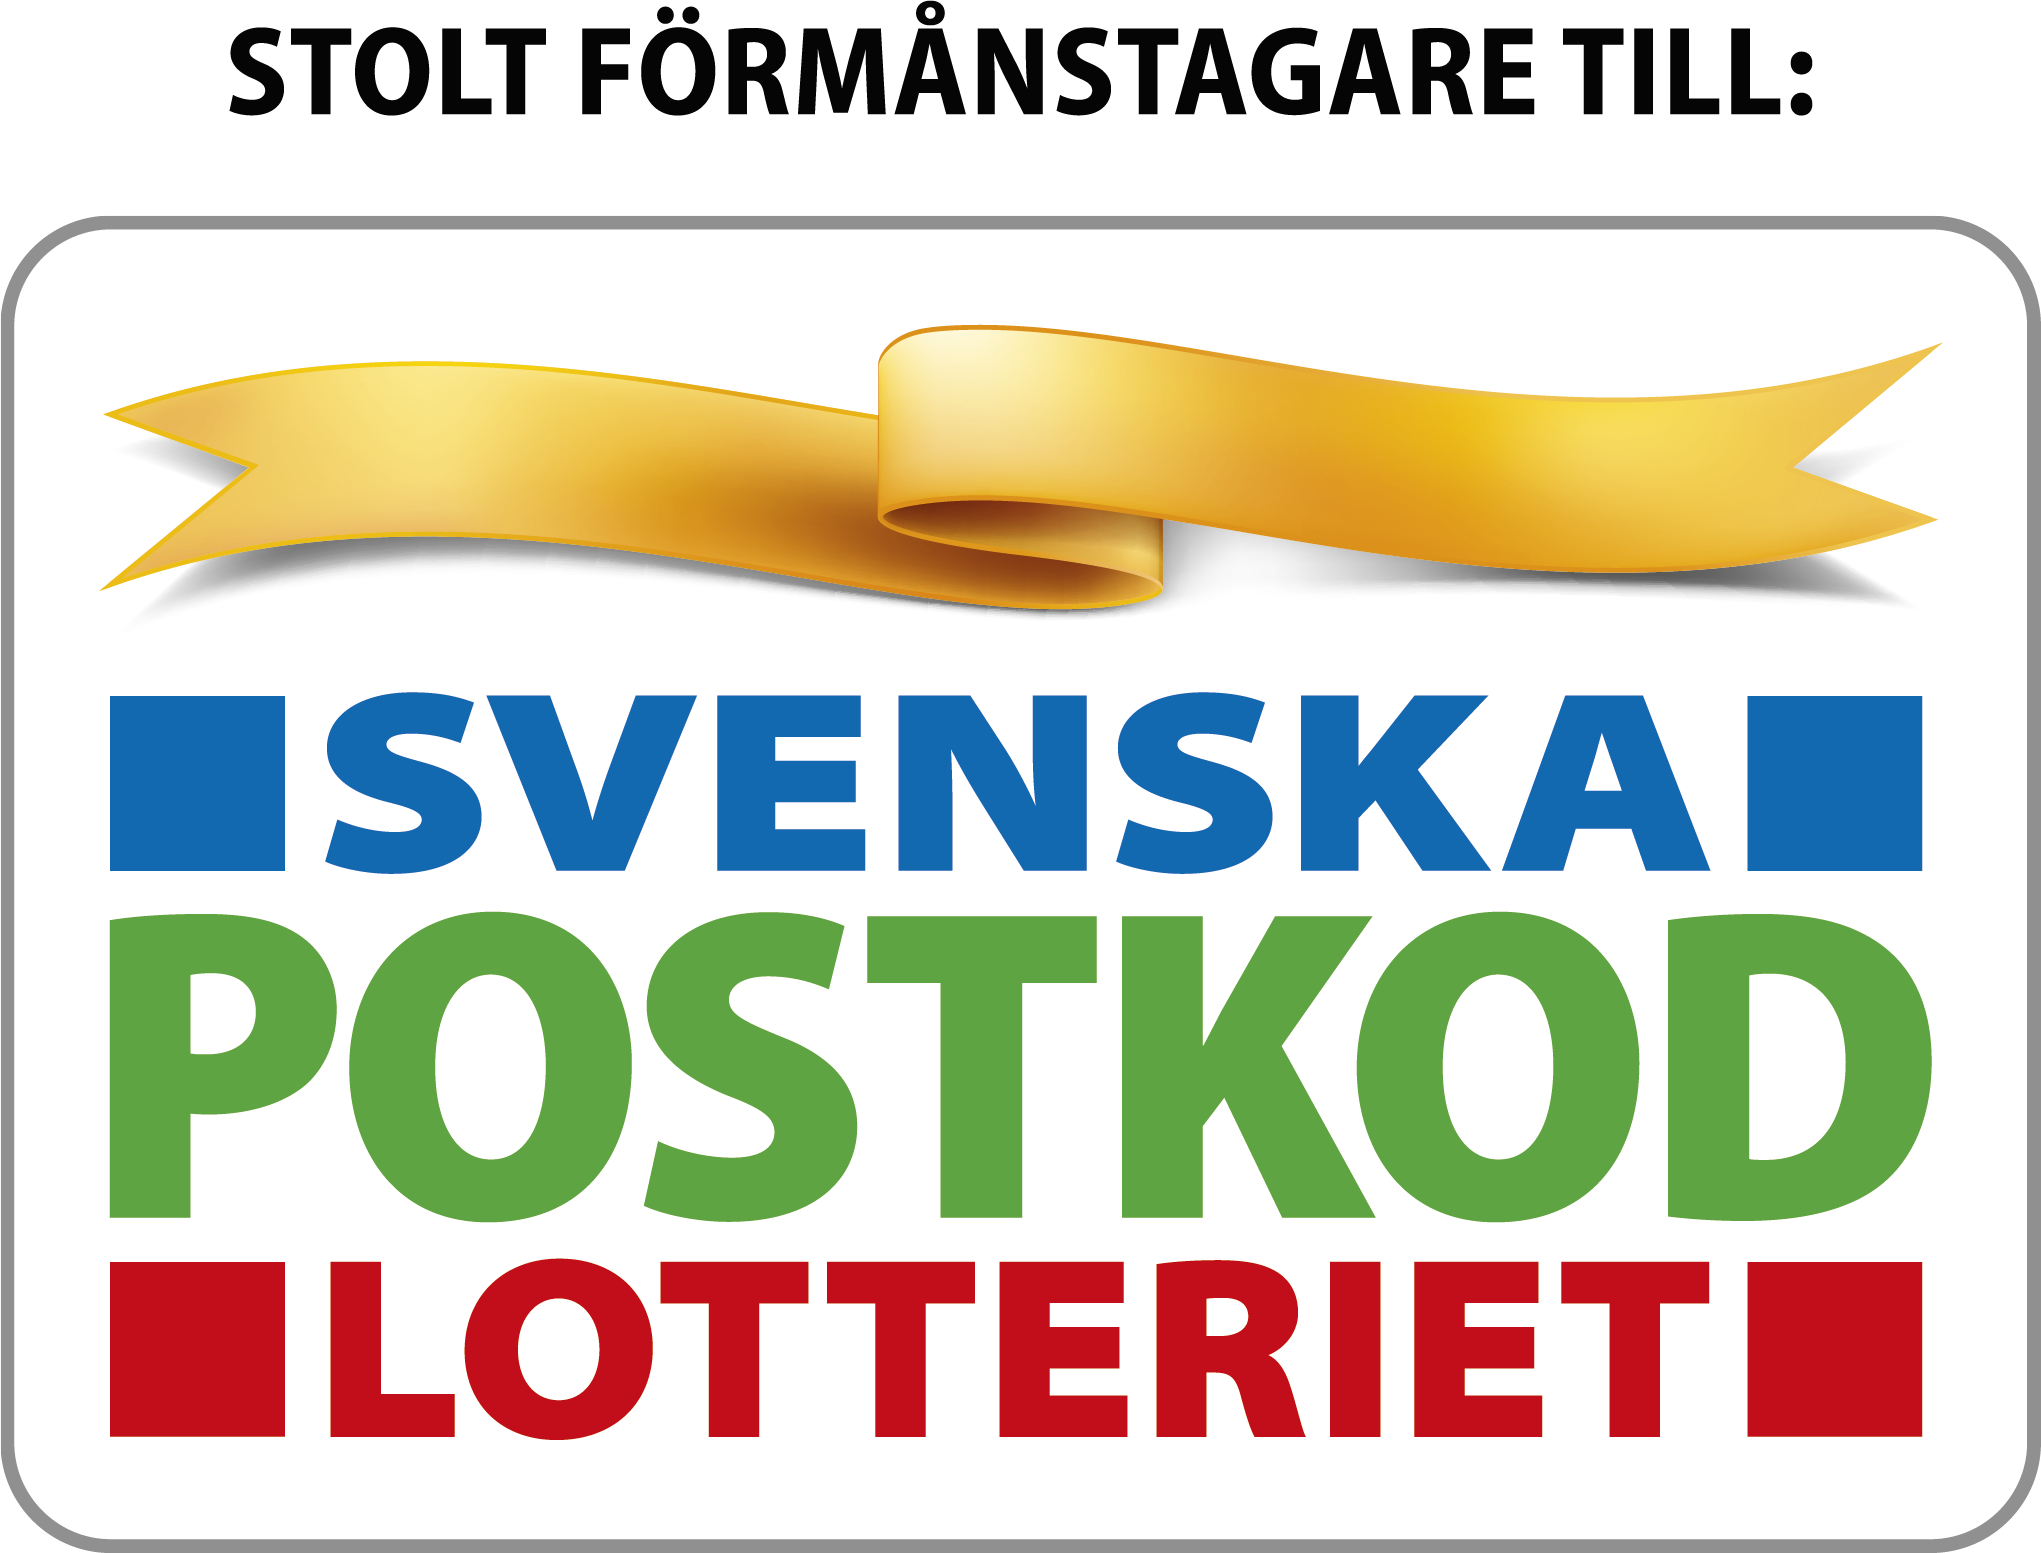 Stolt förmånstagare till Svenska Postkodlotteriet.